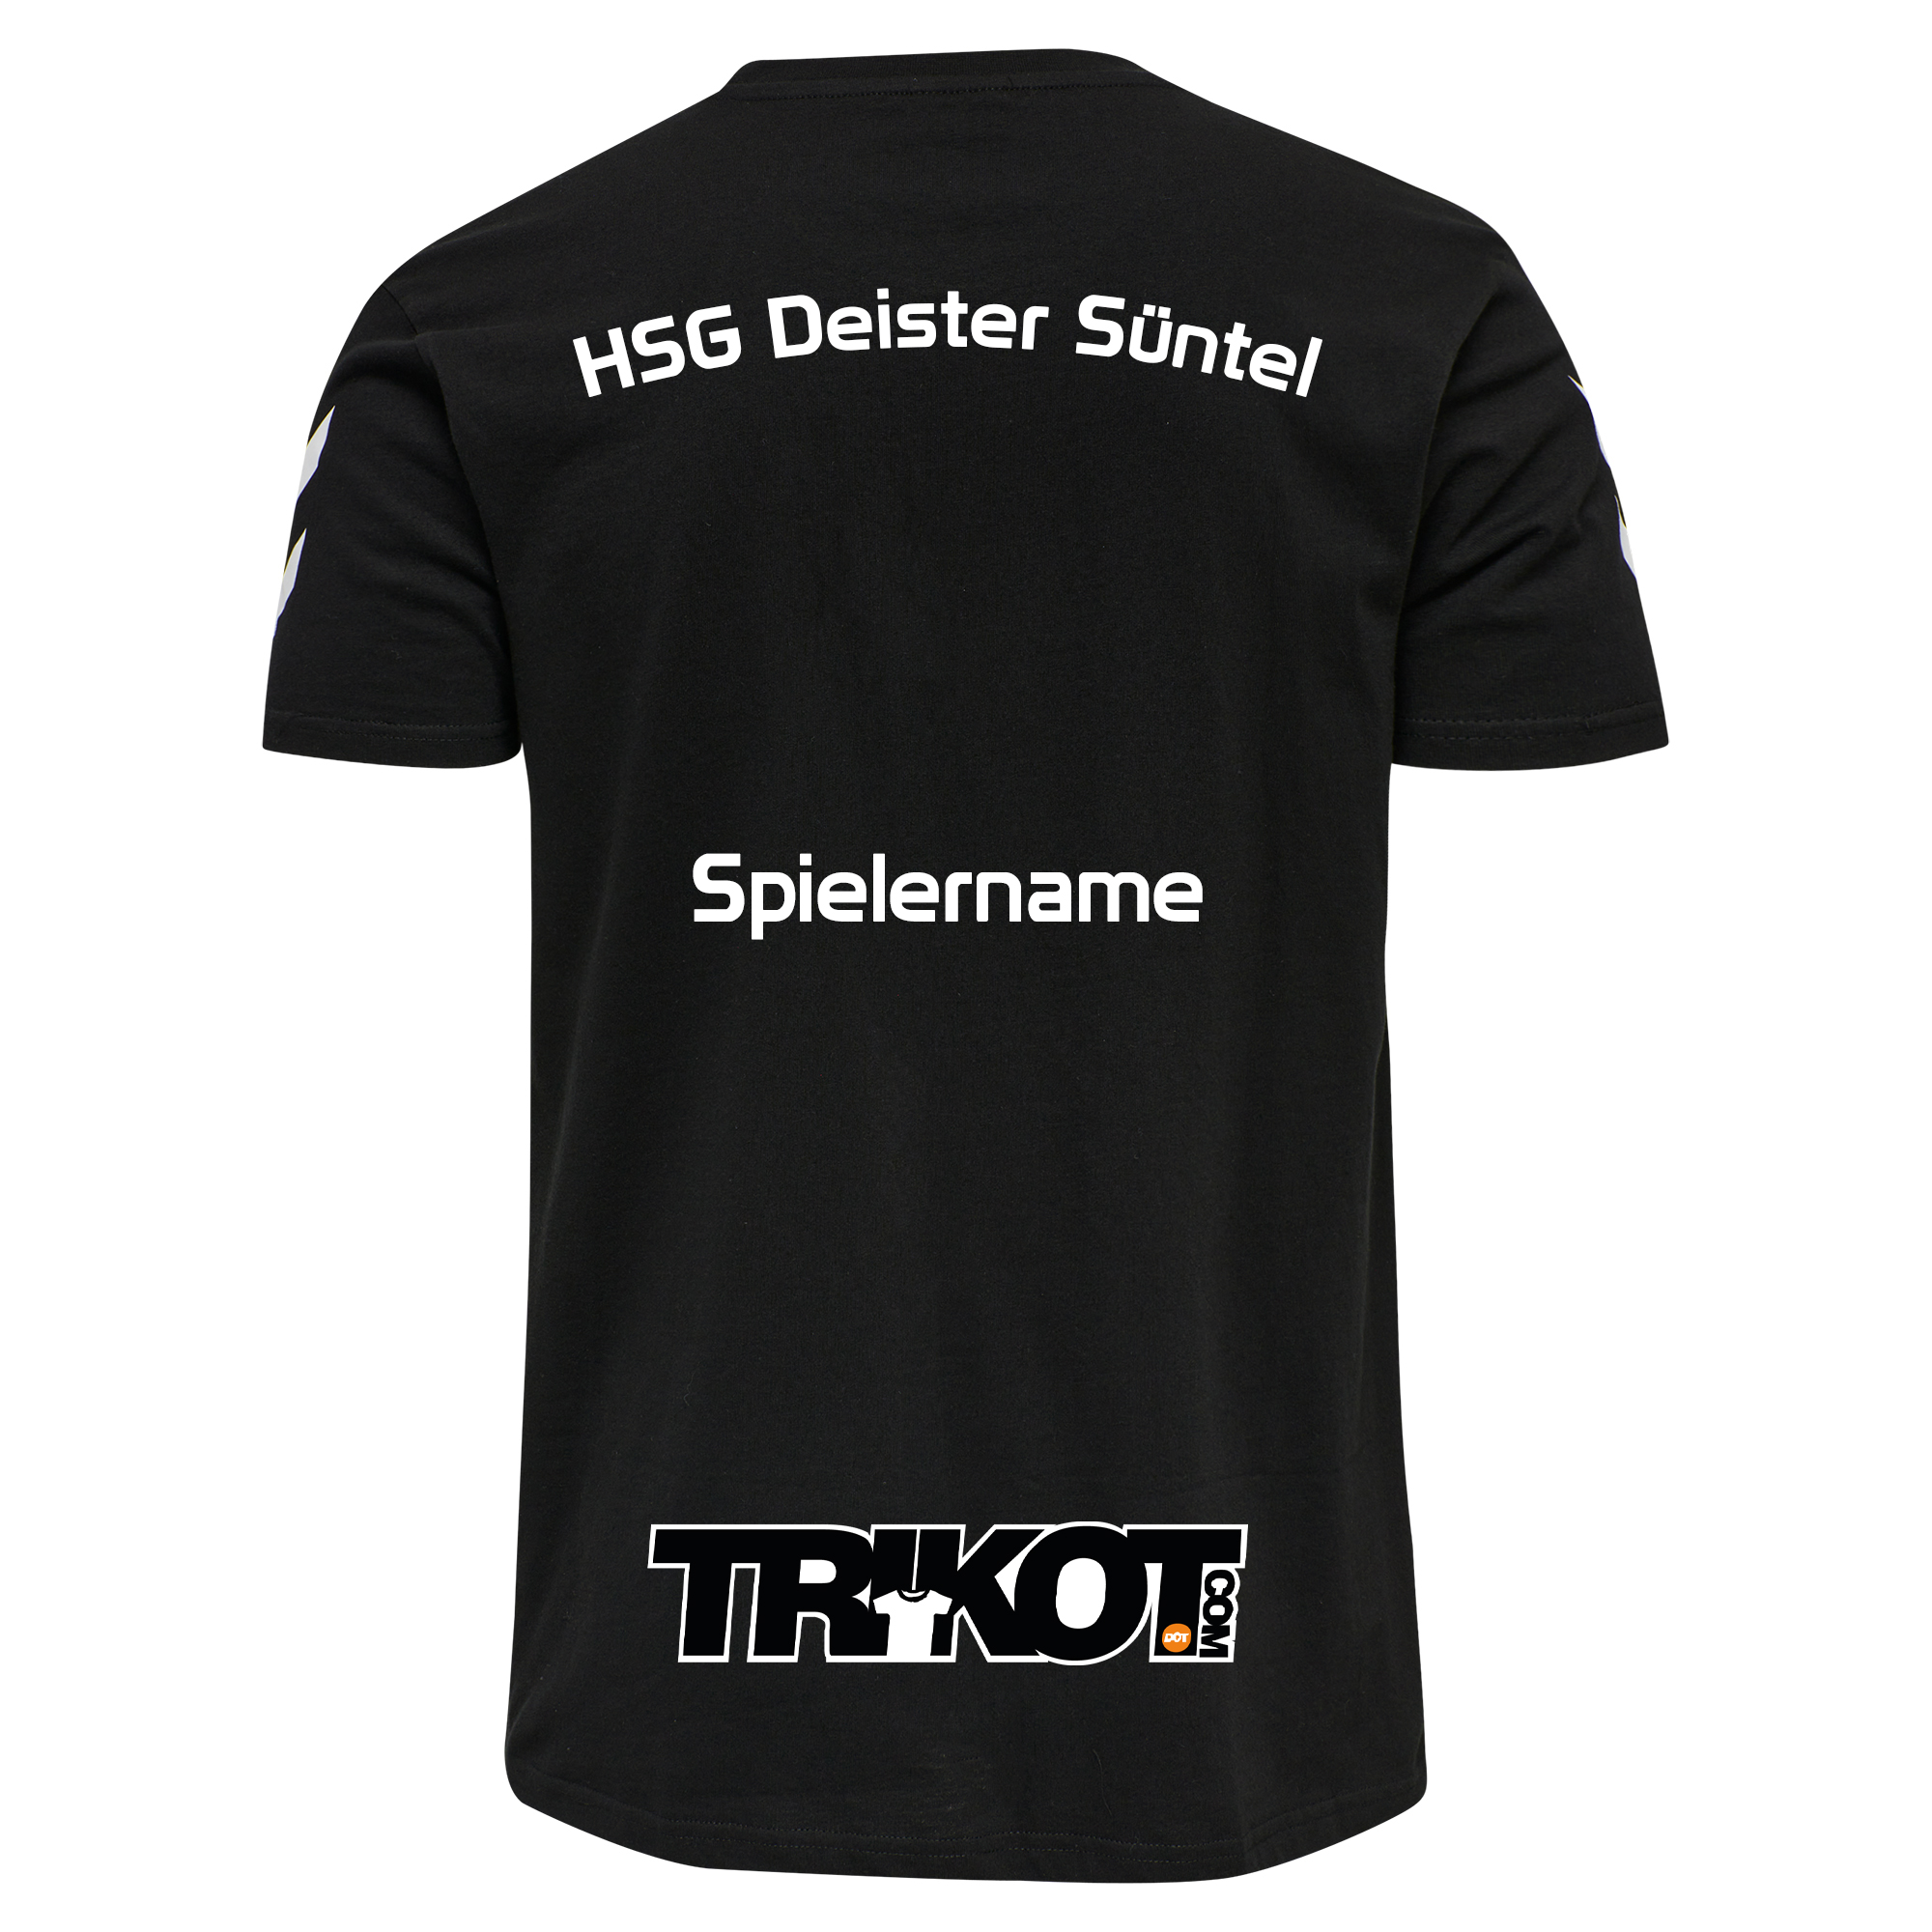 HSG Deister Süntel T-Shirt